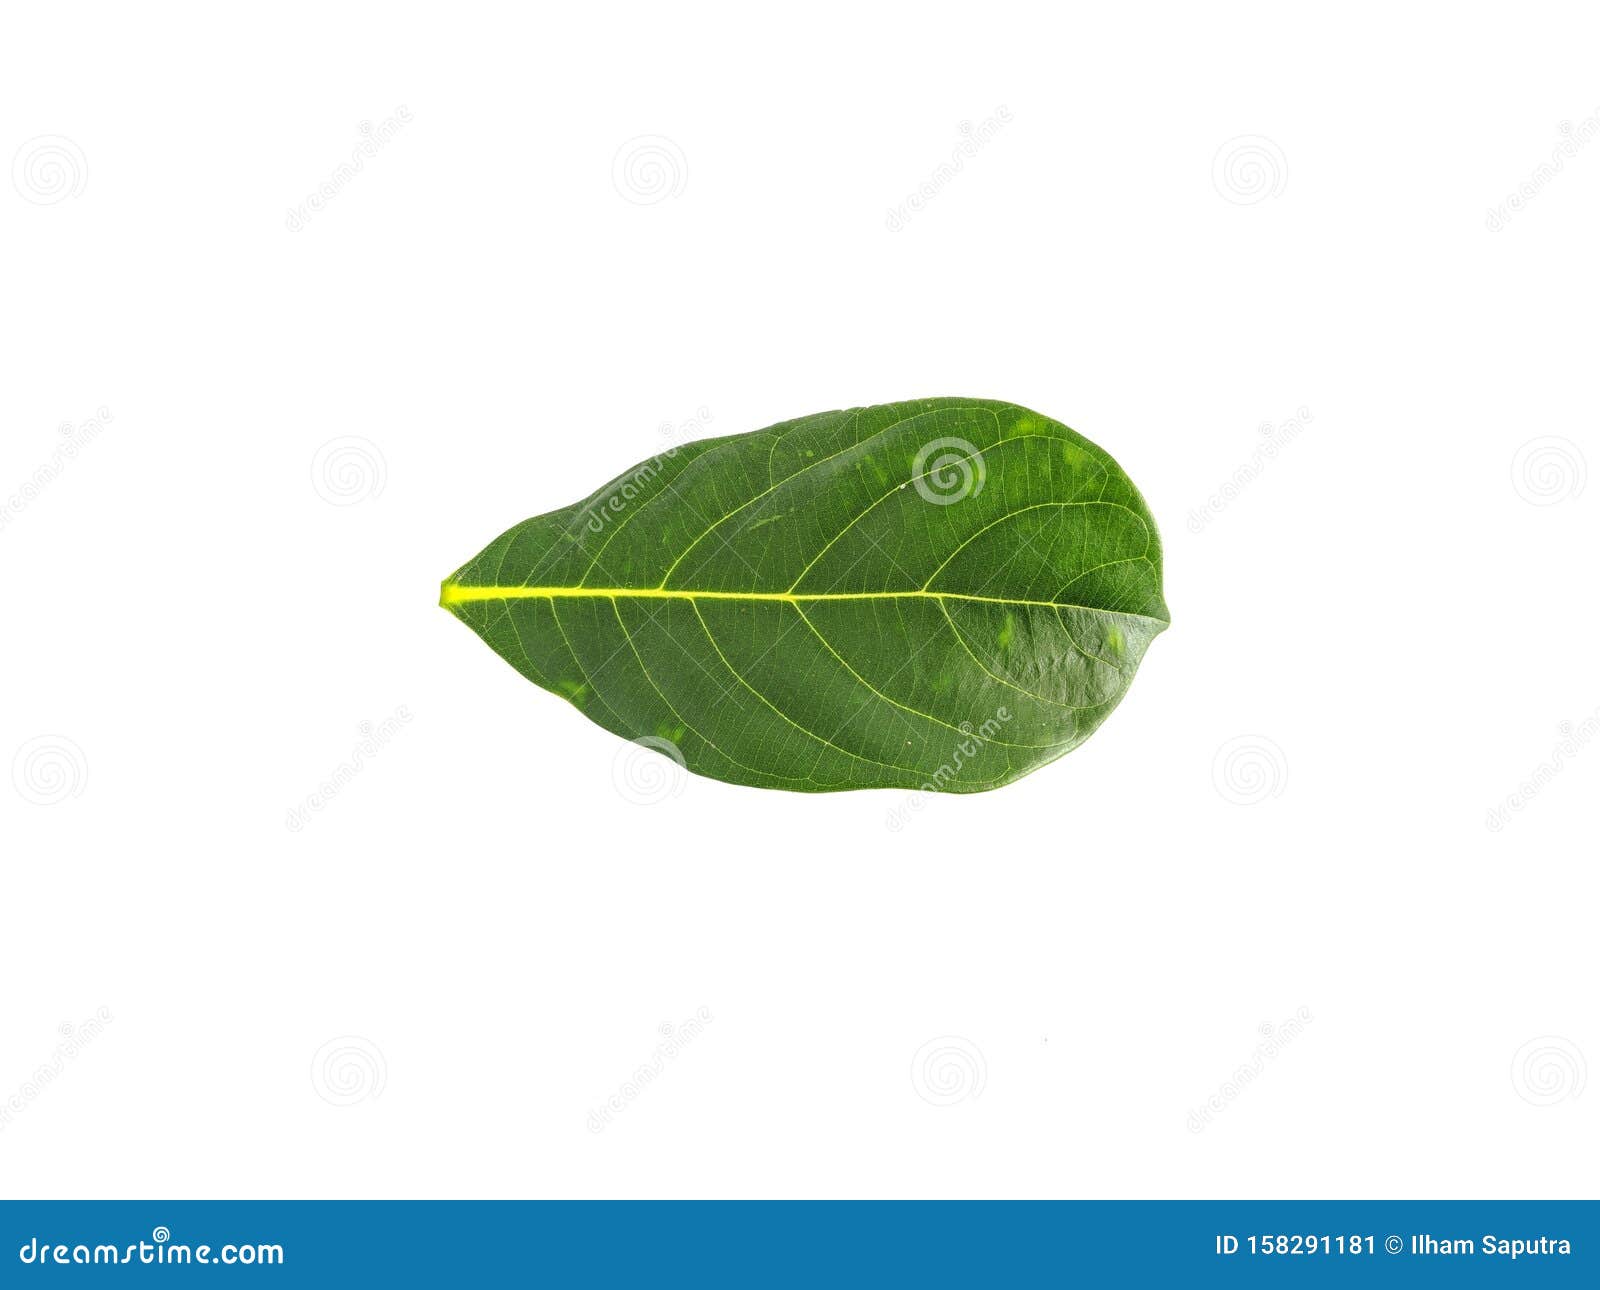 Jackfruit Leaves Isolated on White Background Stock Image - Image of ...